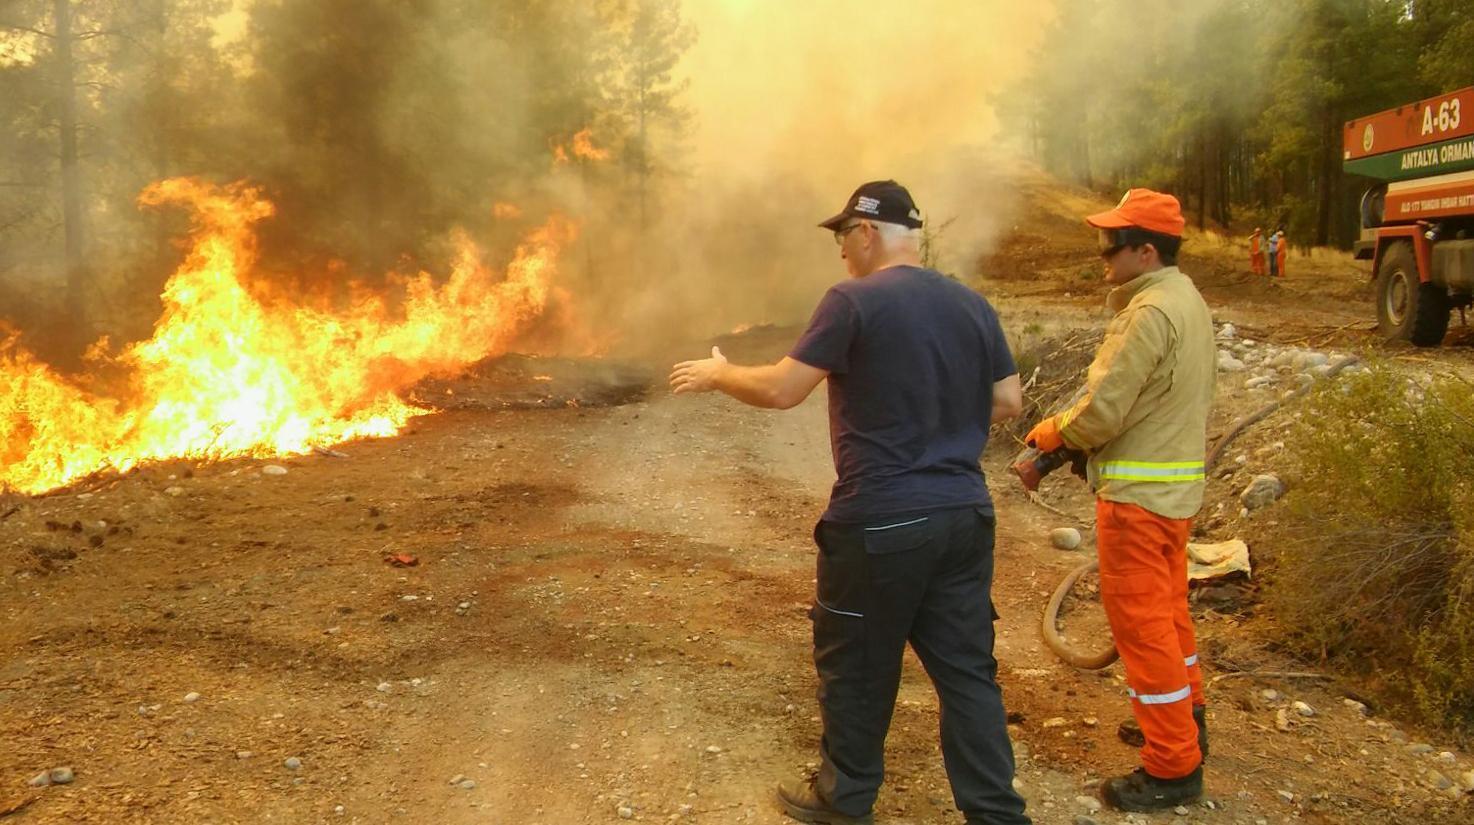 Antalya Kaşta 25 hektar kızılçam ormanı yandı